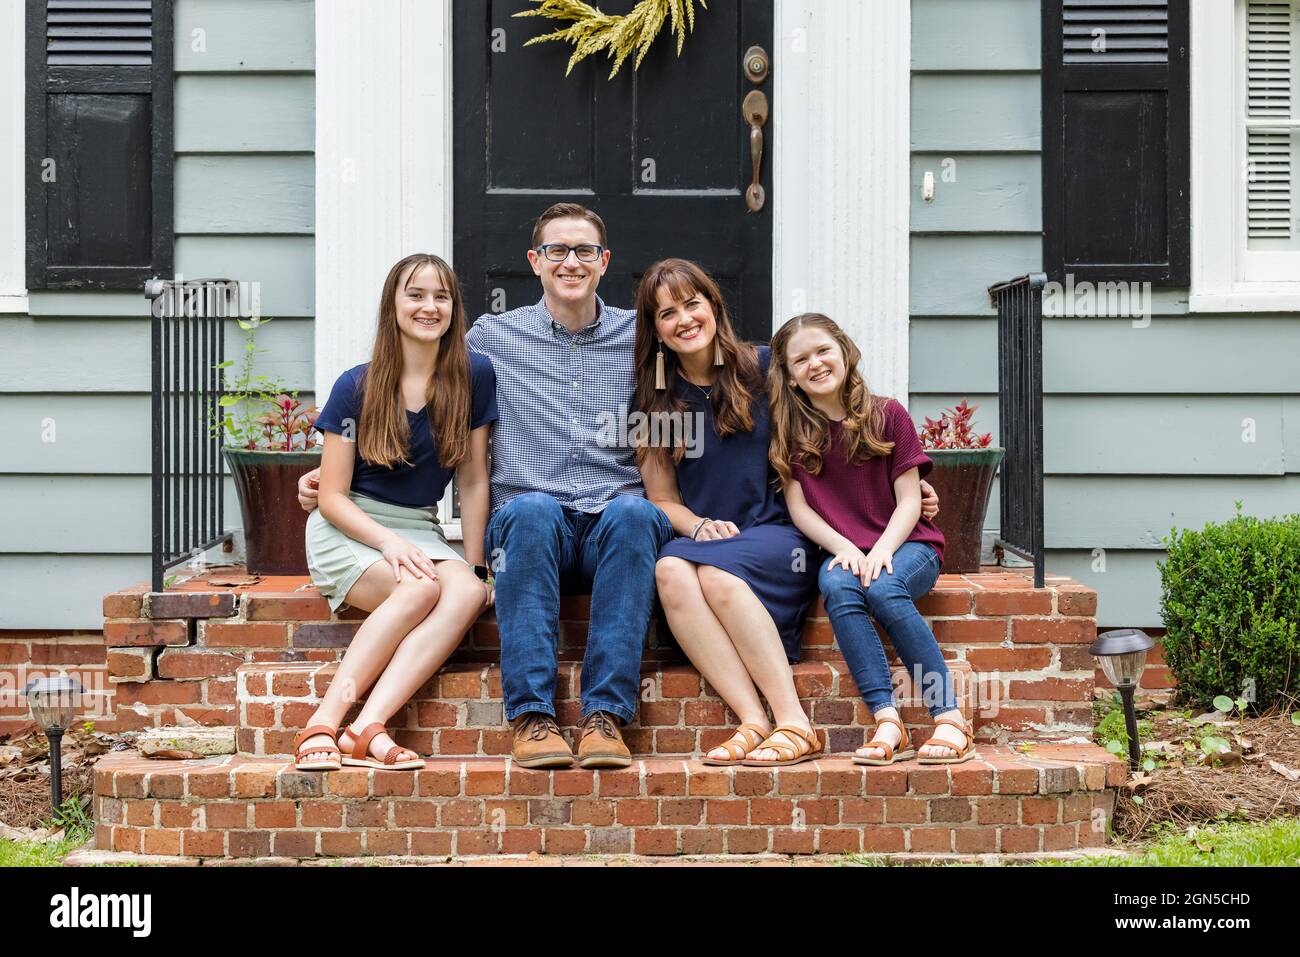 Eine Familie mit einer Mutter, einem Vater und zwei Töchtern, die draußen auf der Backsteinvertei eines kleinen blauen Häuschens sitzen Stockfoto